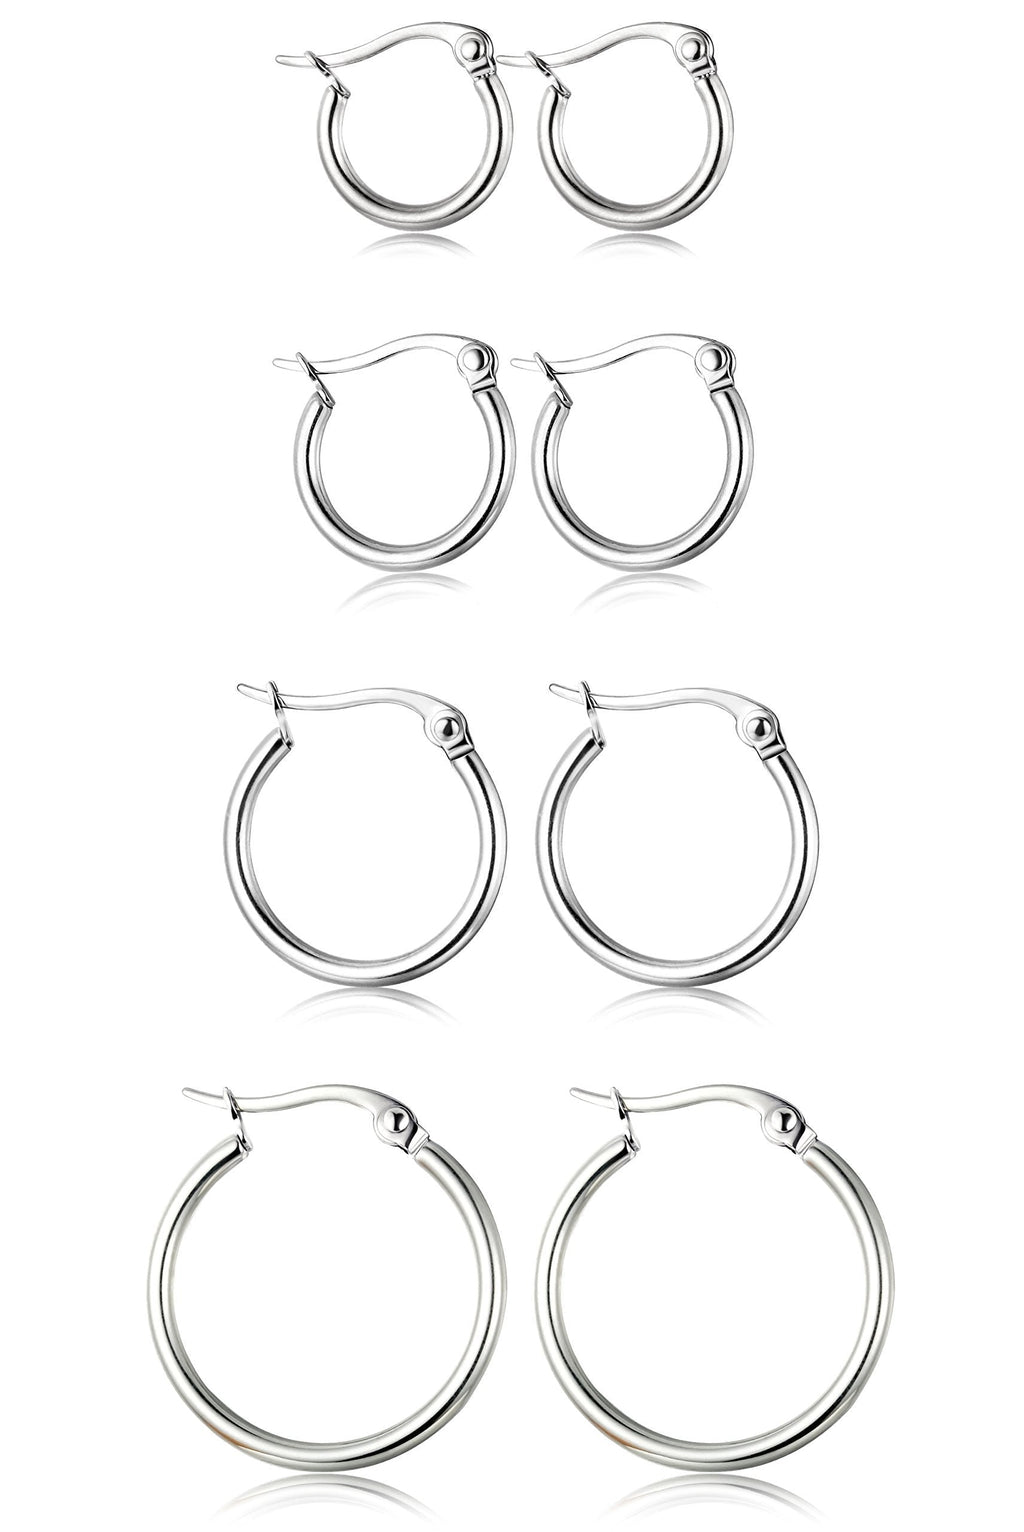 [Australia] - ORAZIO 4 Pairs Stainless Steel Hoop Earrings Set Cute Huggie Earrings for Women,10MM-20MM A: Silver-tone,4 pairs 